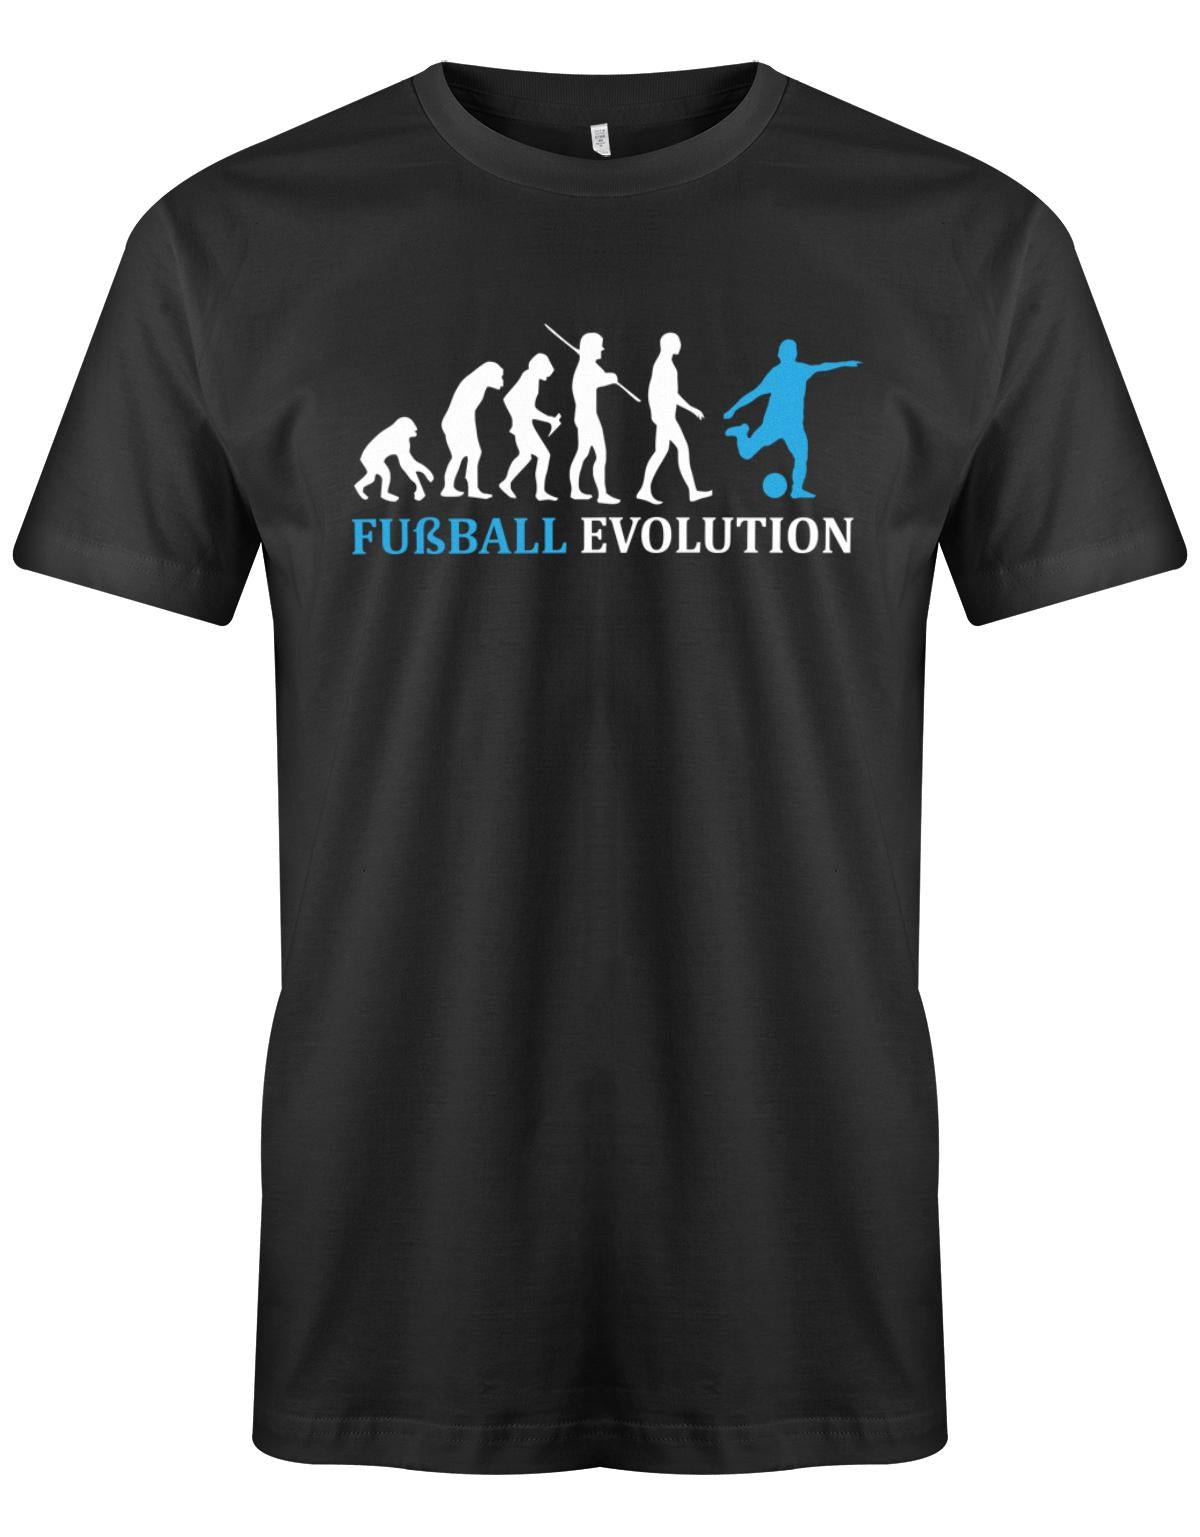 Fussball-Evolution-Herren-Shirt-Schwarz-Hellblau